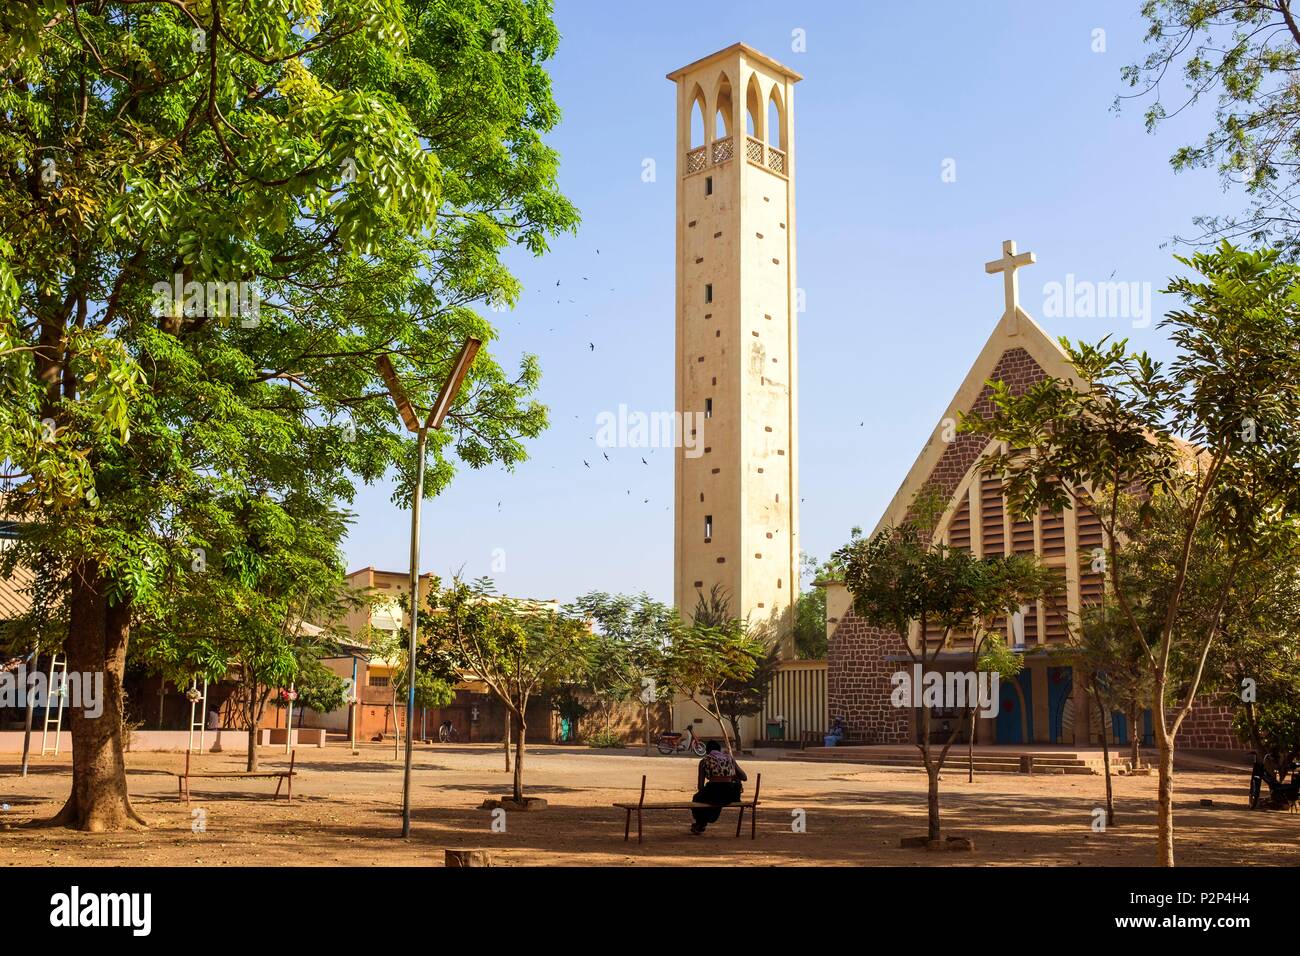 Le Burkina Faso, région Centre, Ouagadougou, Dapoya church Banque D'Images